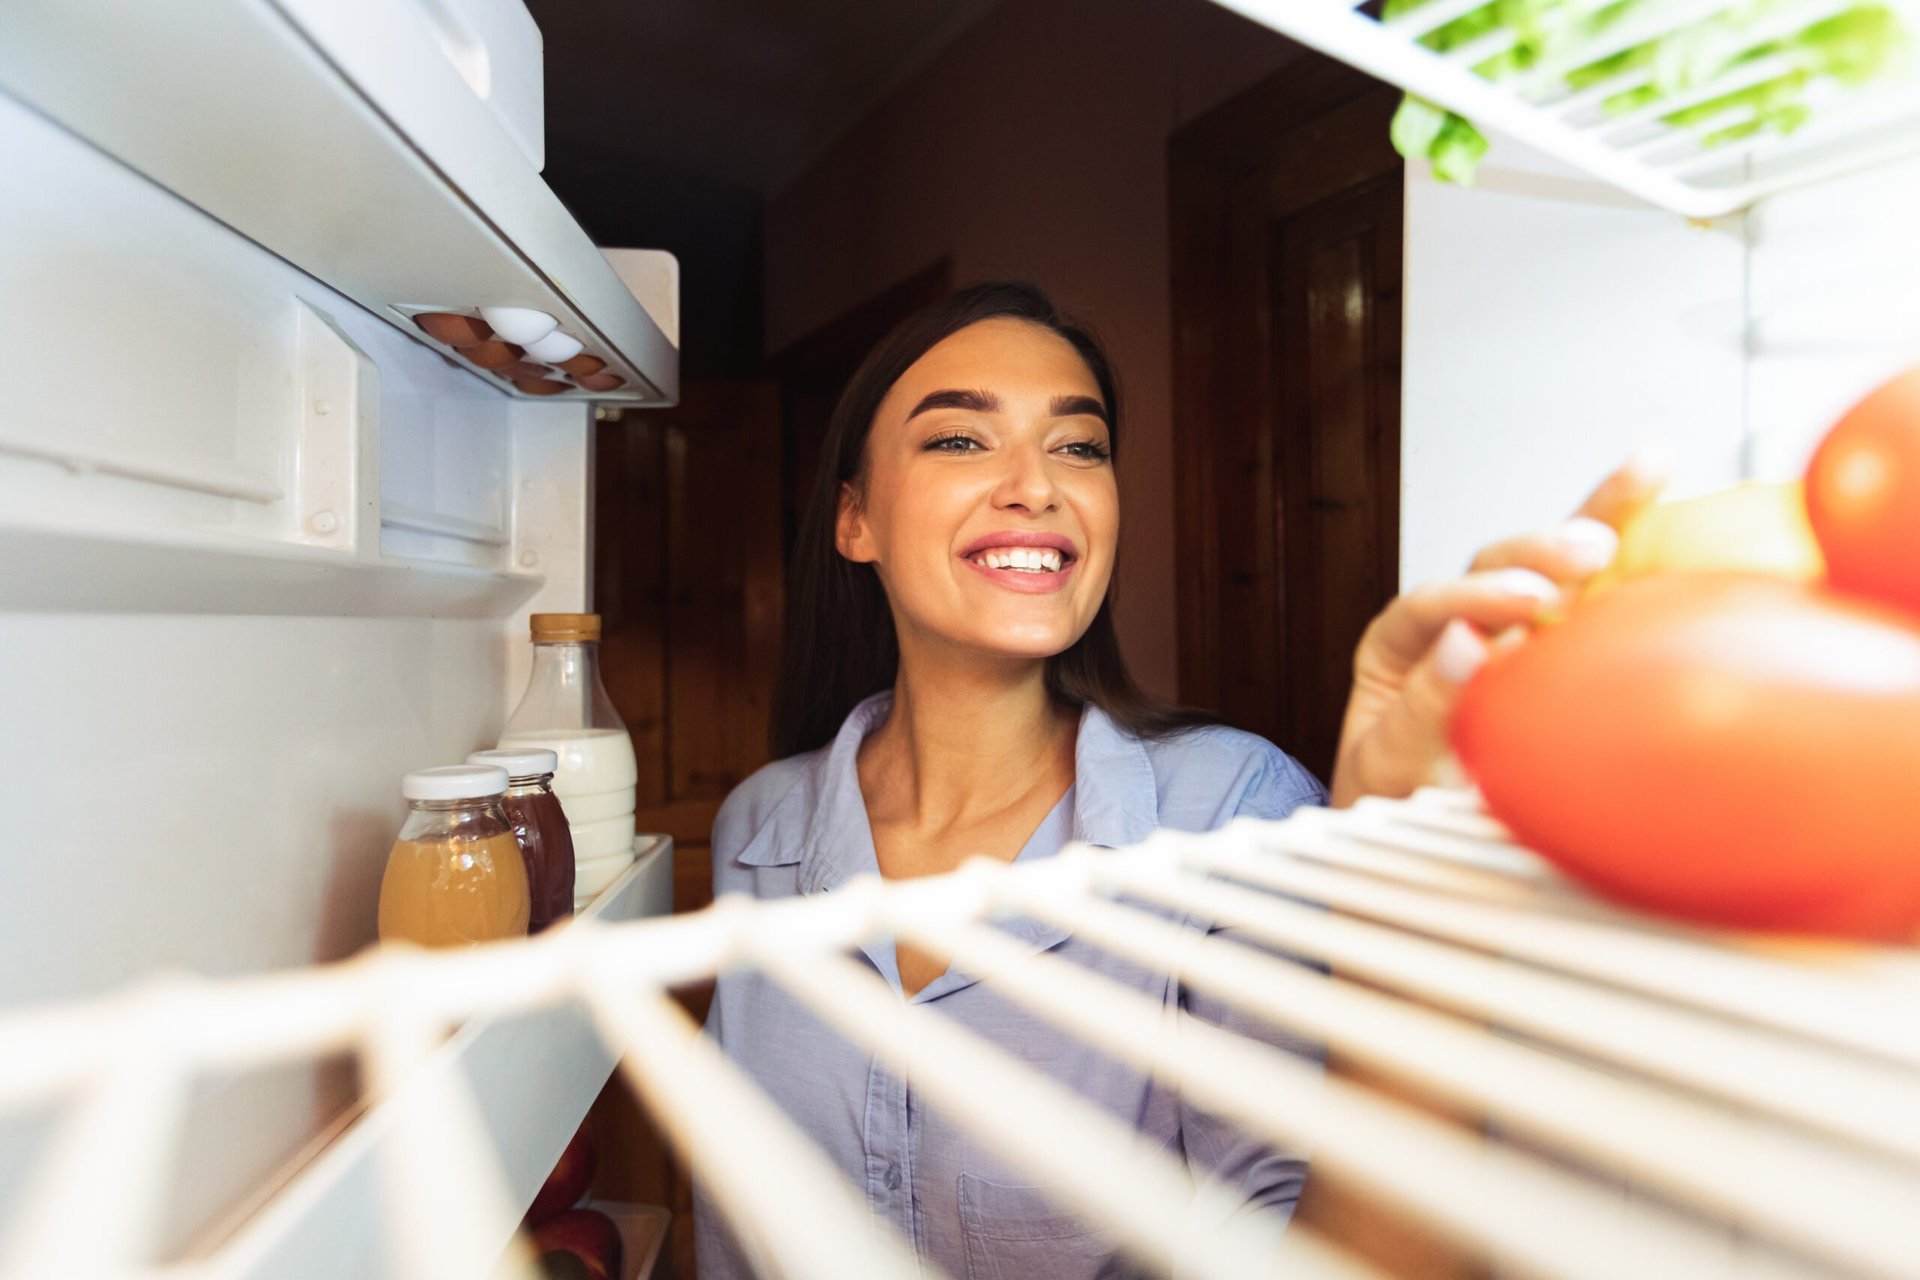 Happy woman looking into a refrigerator